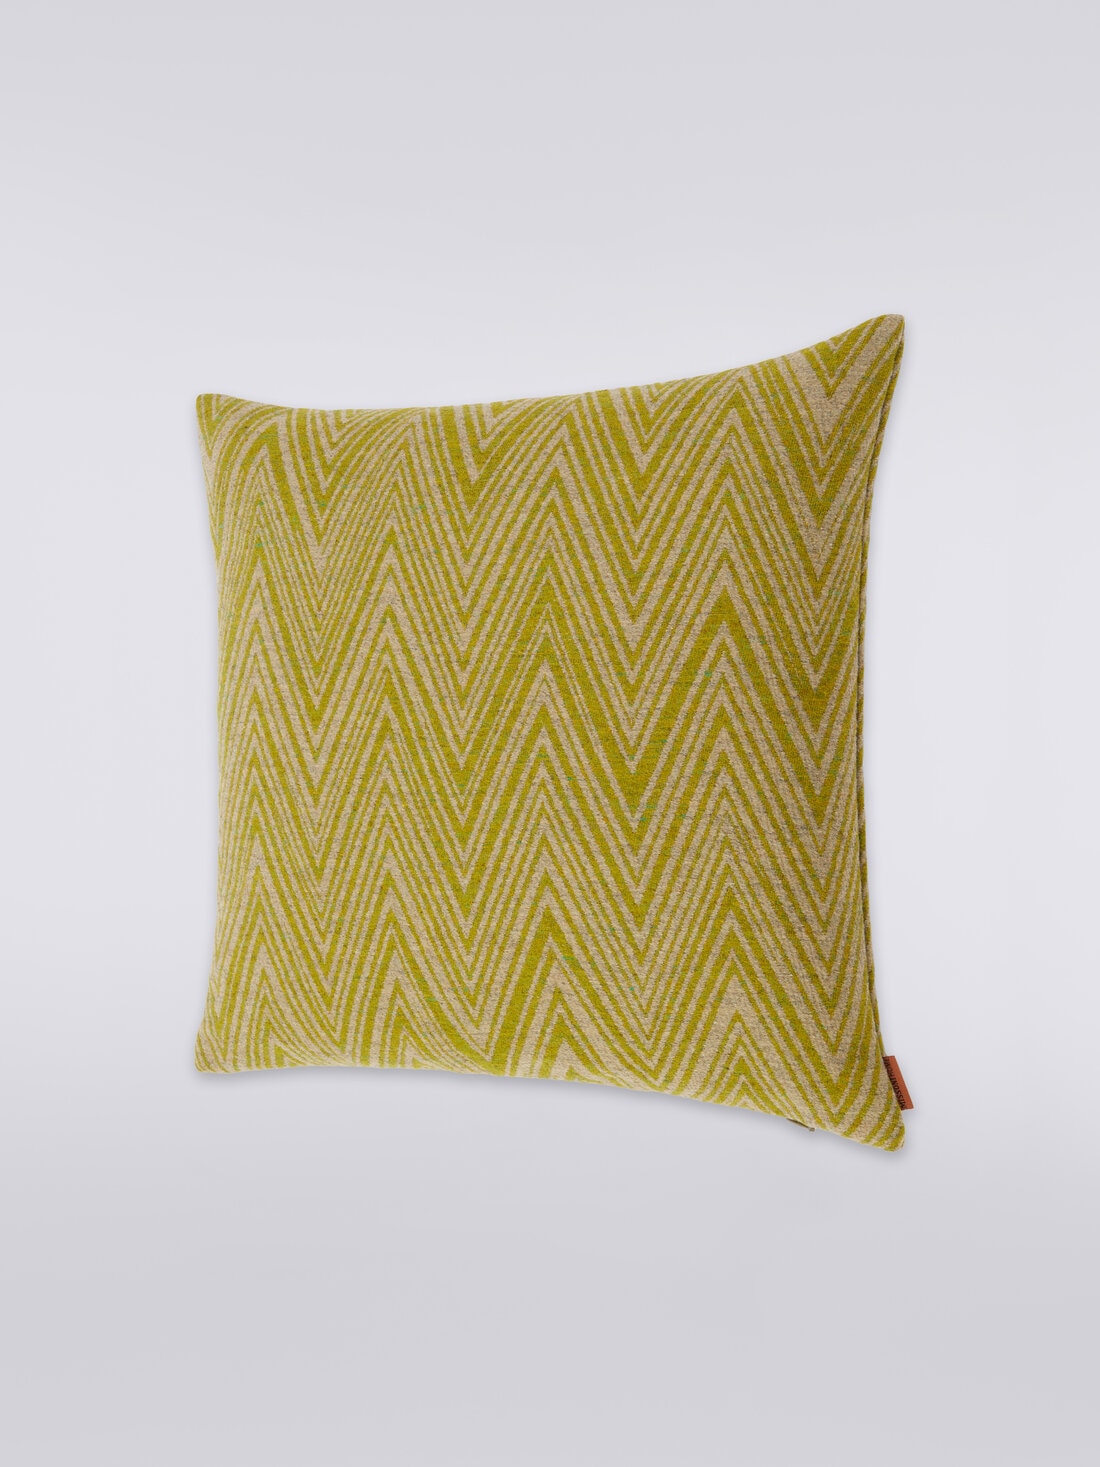 Bridgetown cushion 40x40 cm, Multicoloured  - 8051275581741 - 1